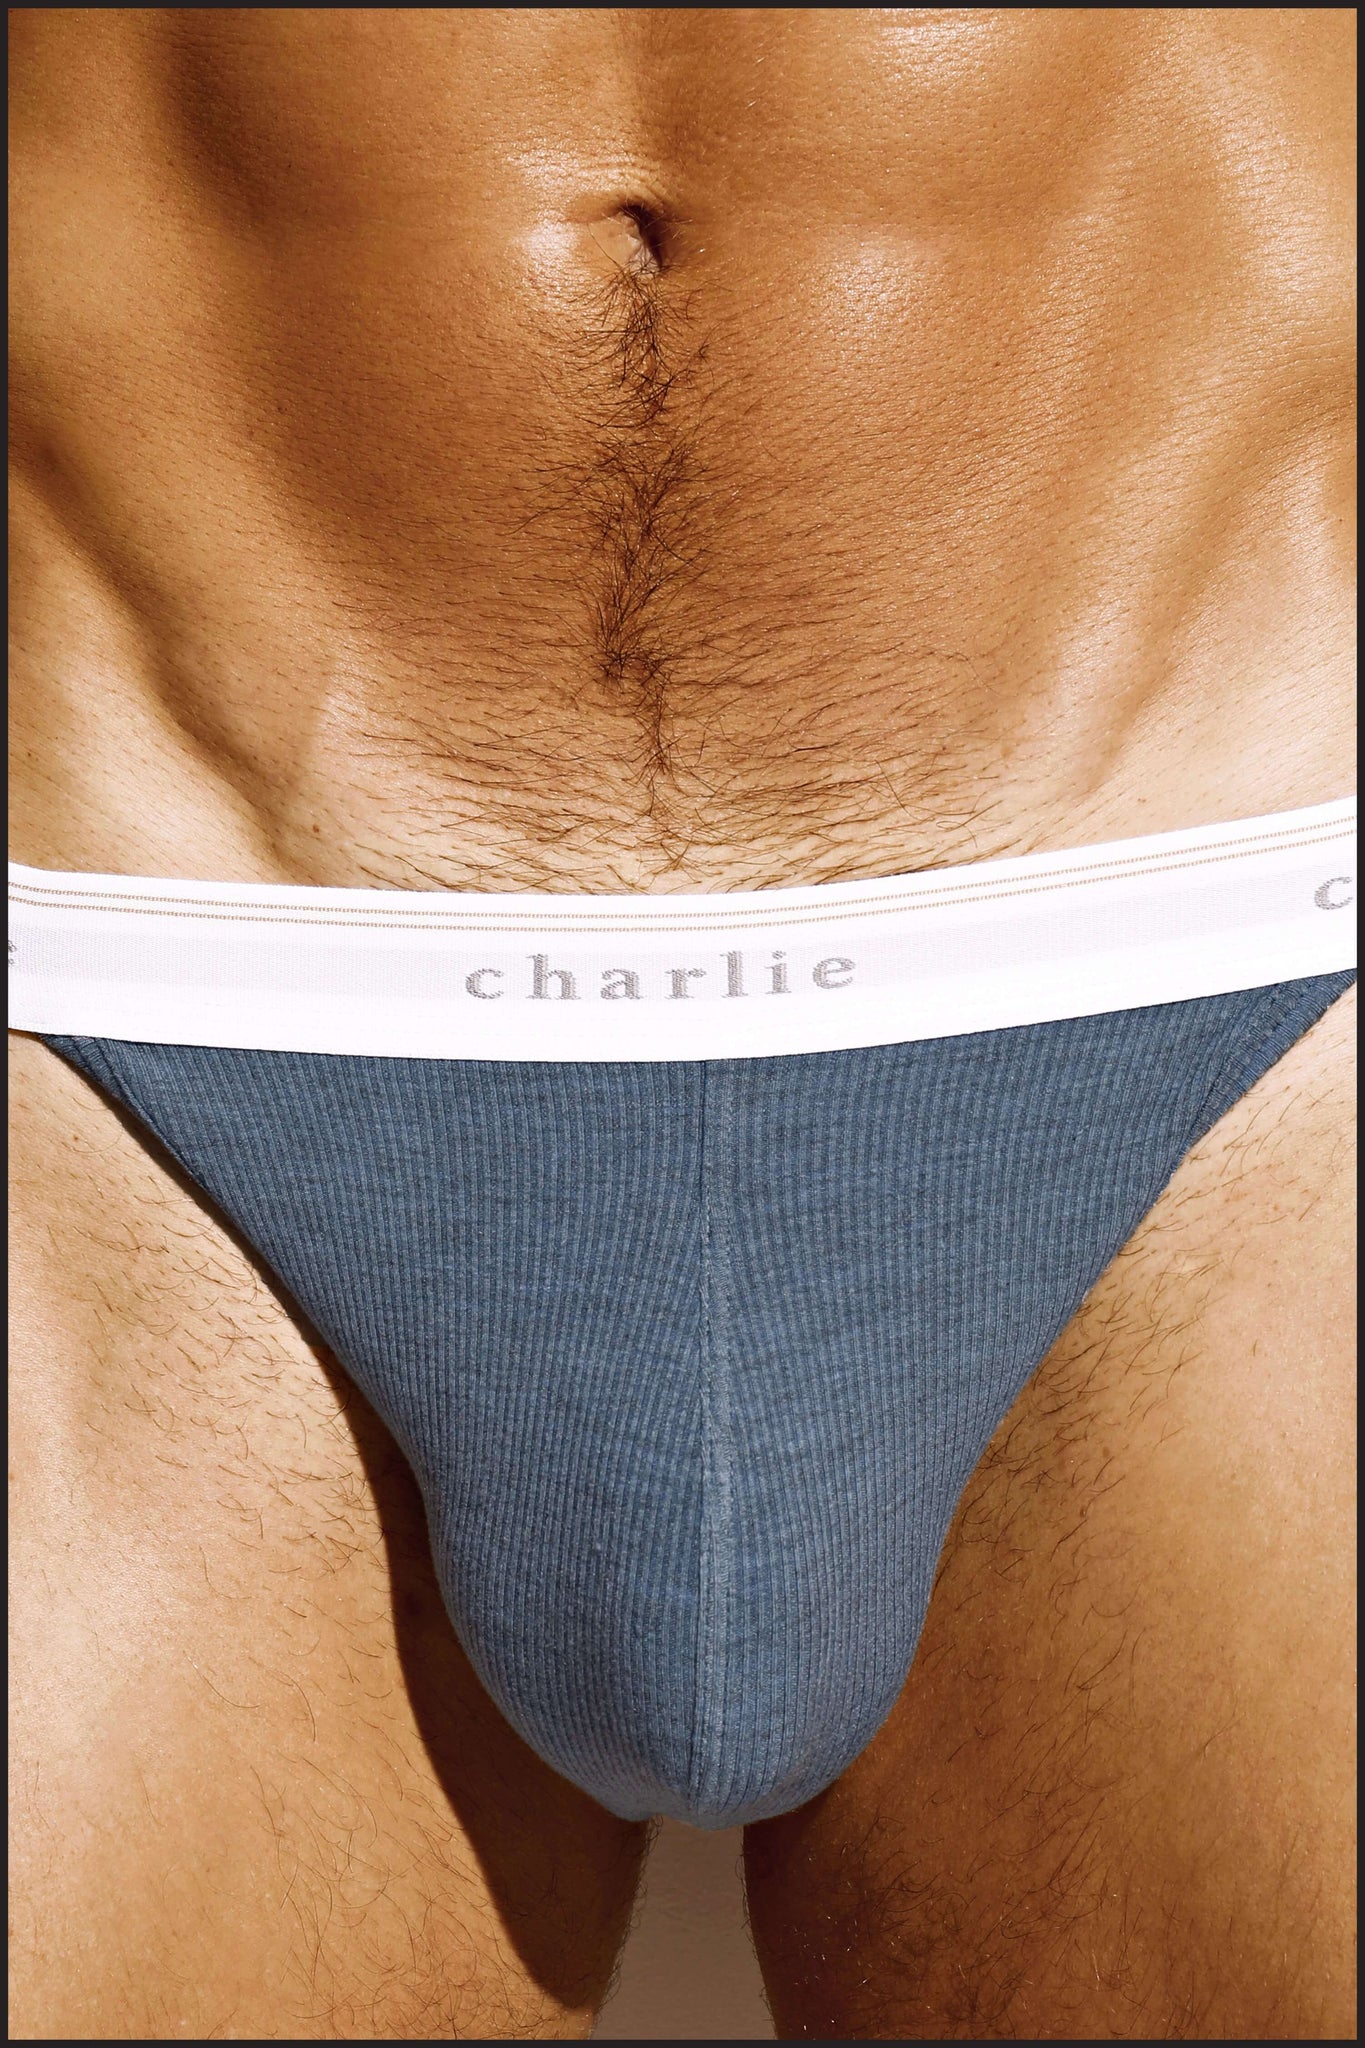 Charlie by Matthew Zink Denim Underwear Sport Brief